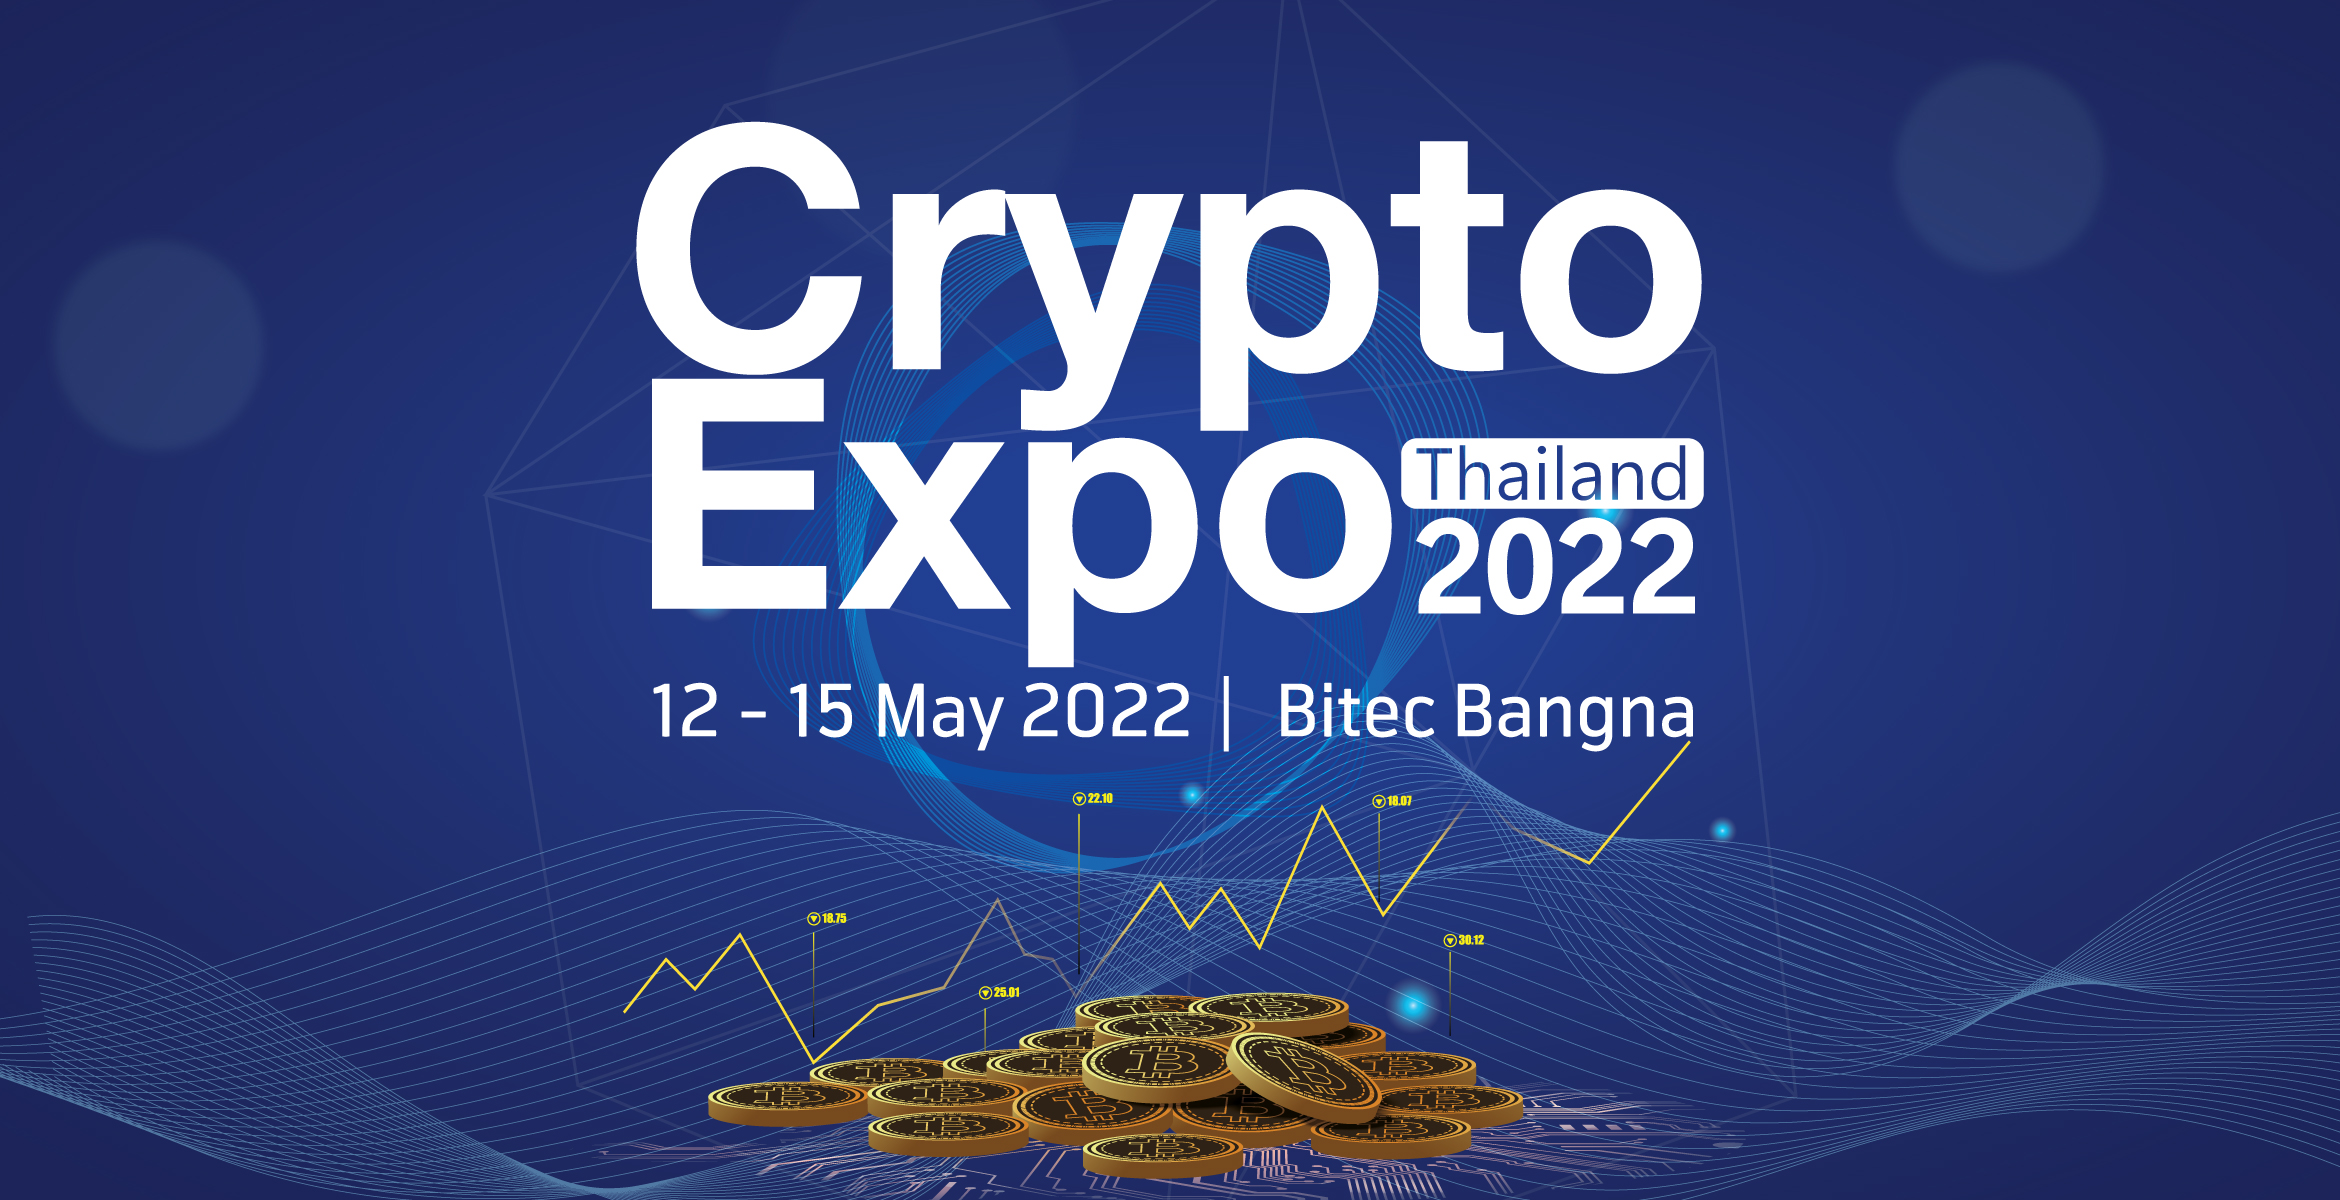 Thailand Crypto Expo 2022 - Bangkok International Trade & Exhibition Centre